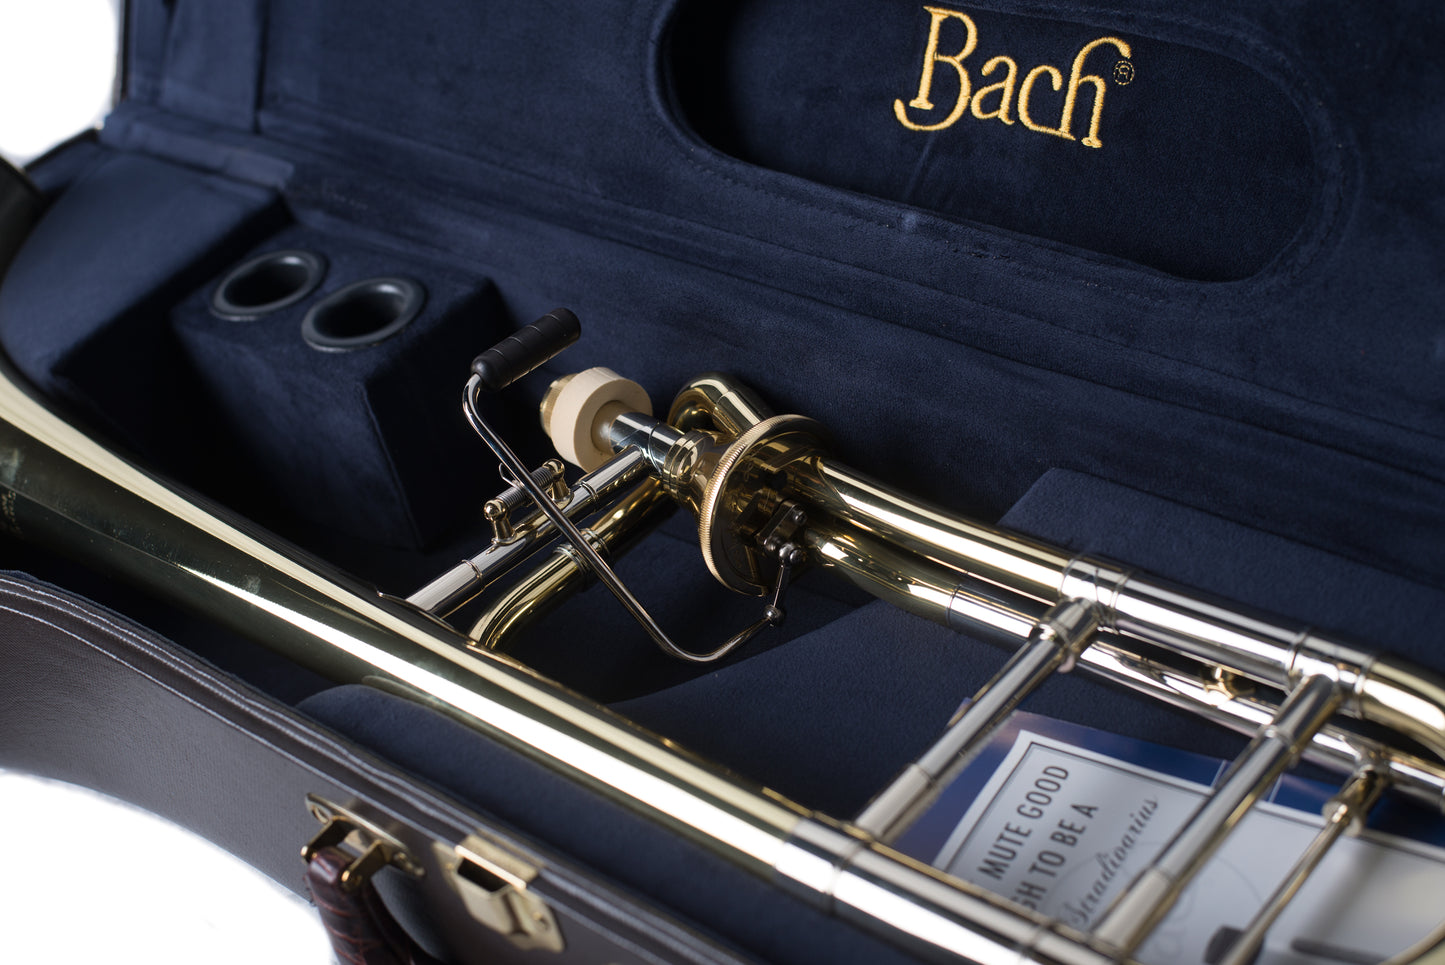 Bach 42AF Stradivarius Series Professional Trombone (42AF)